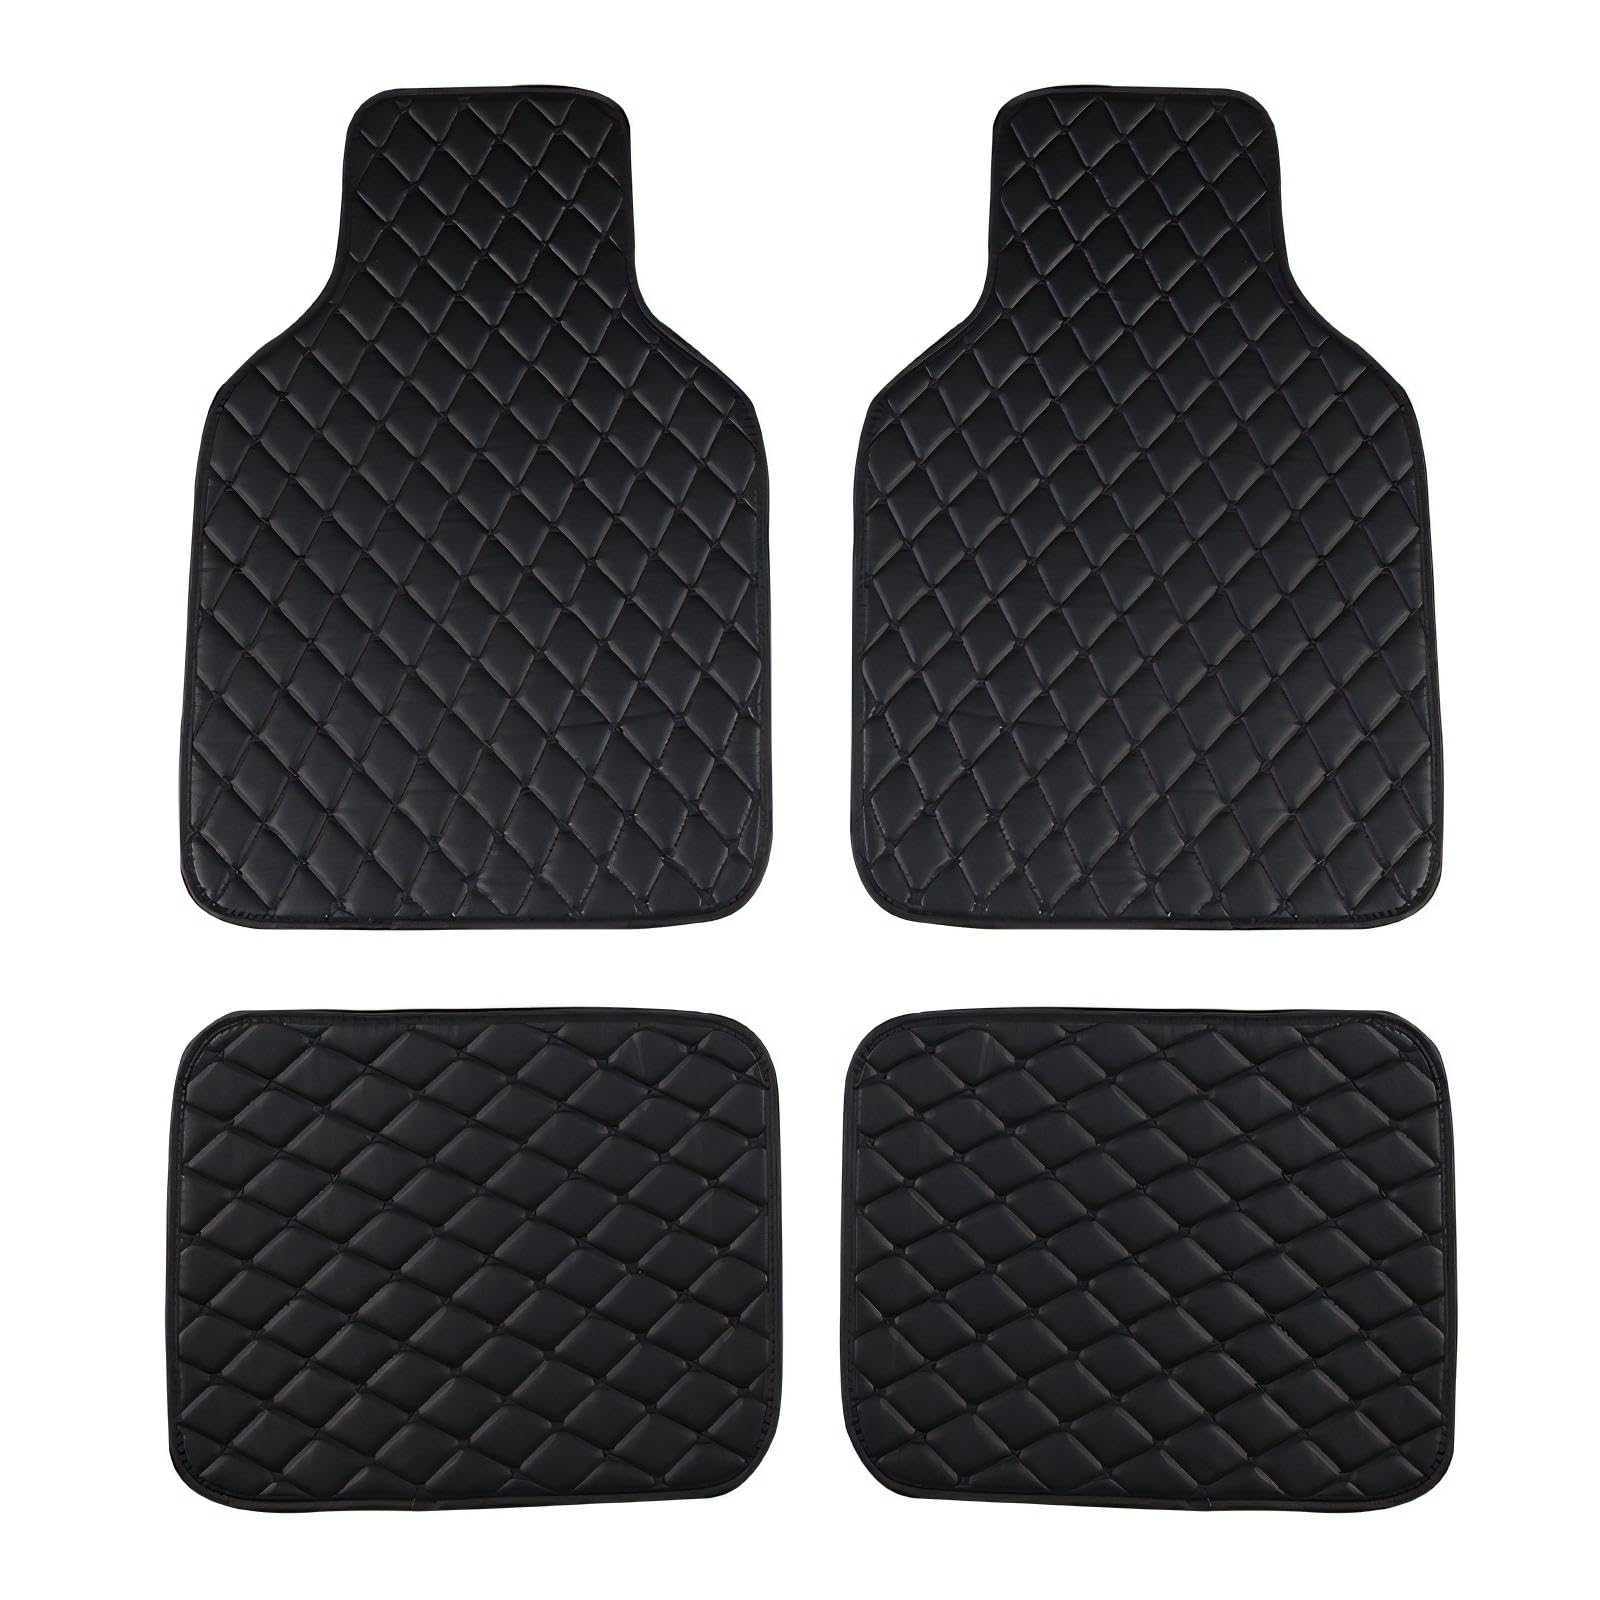 Auto Einzelteil FußMatte fur Subaru Forester 2013-2018, Auto FußMatte Heavy Duty Wear Resistant Carpet Waterproof and Flexible von GRASKY